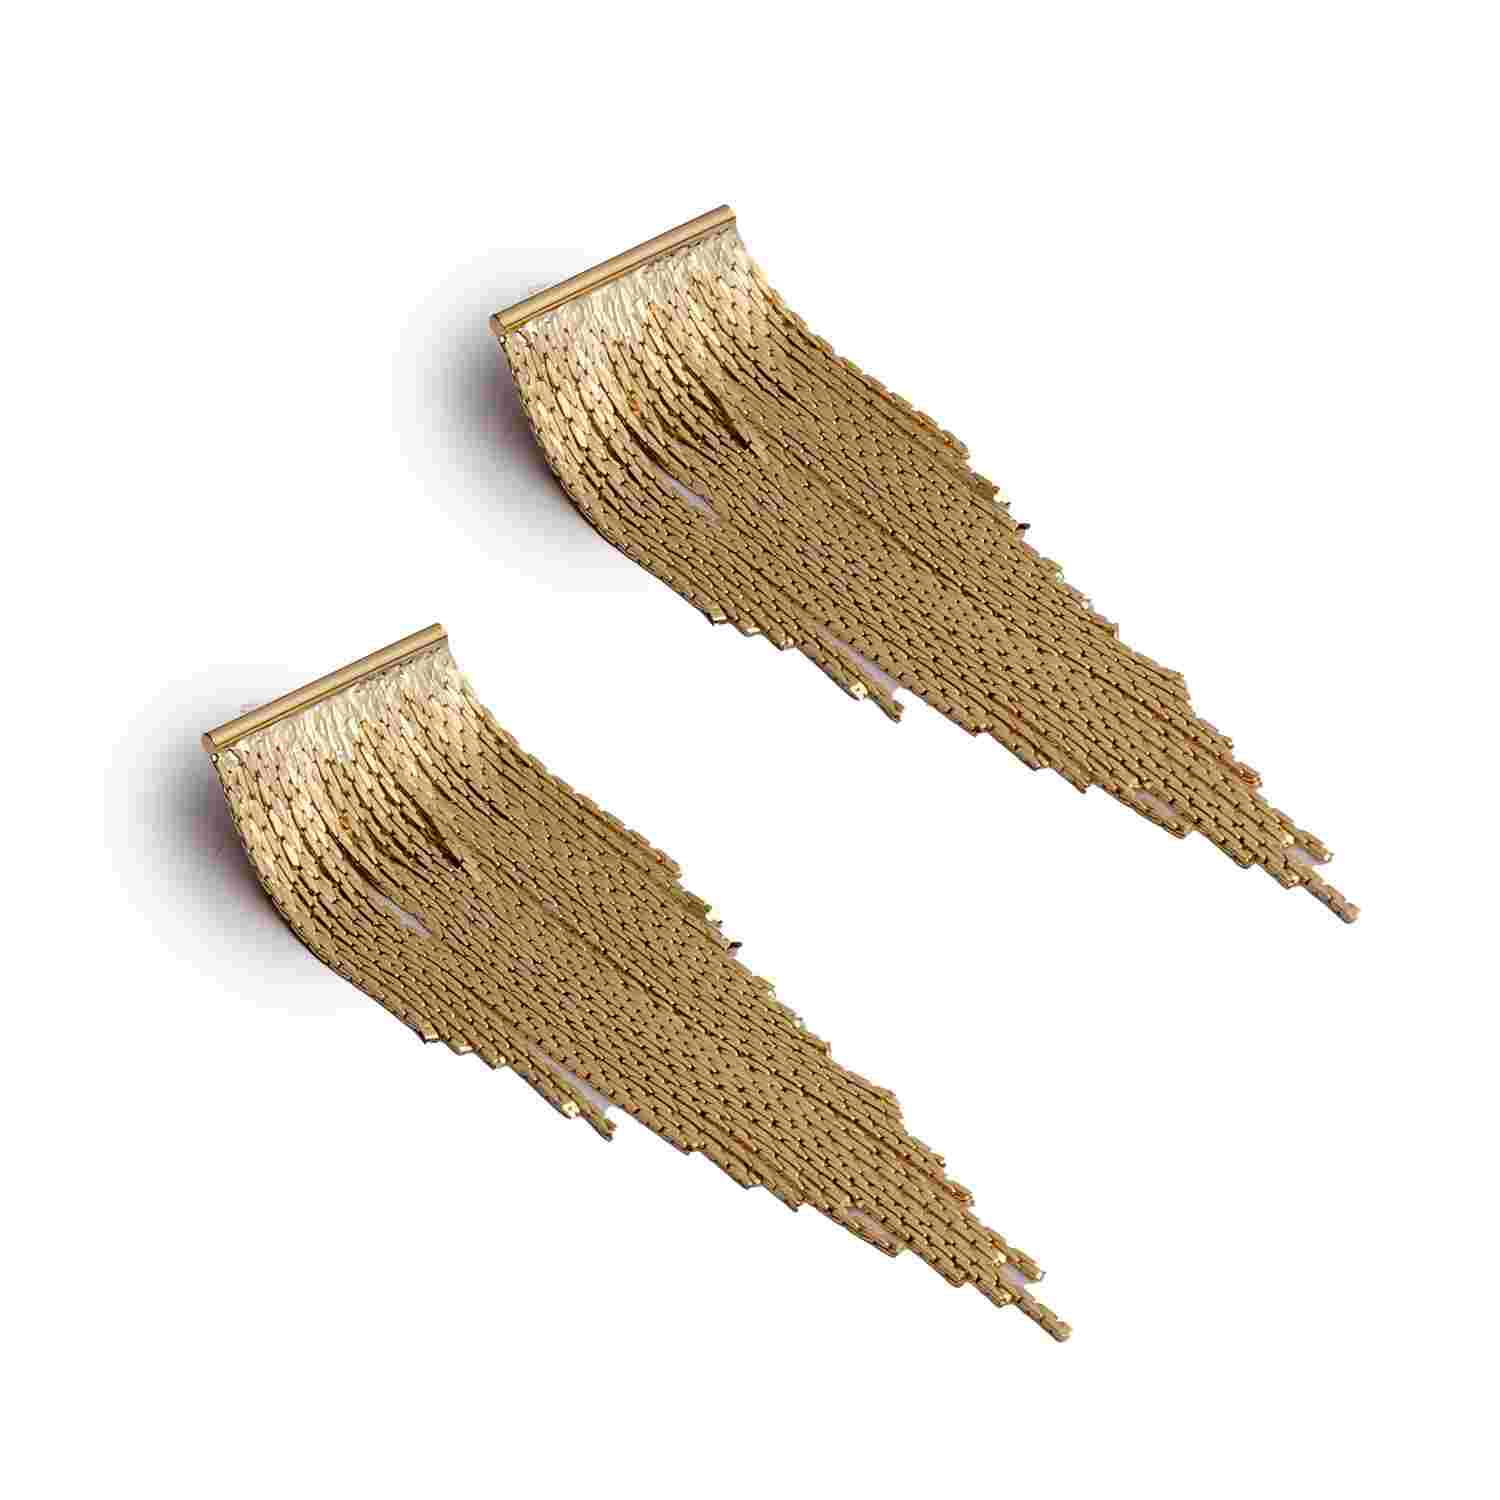 Gold Dangle Earrings | Tassel Earrings for Women | Long Earrings | Imitation Jewelry